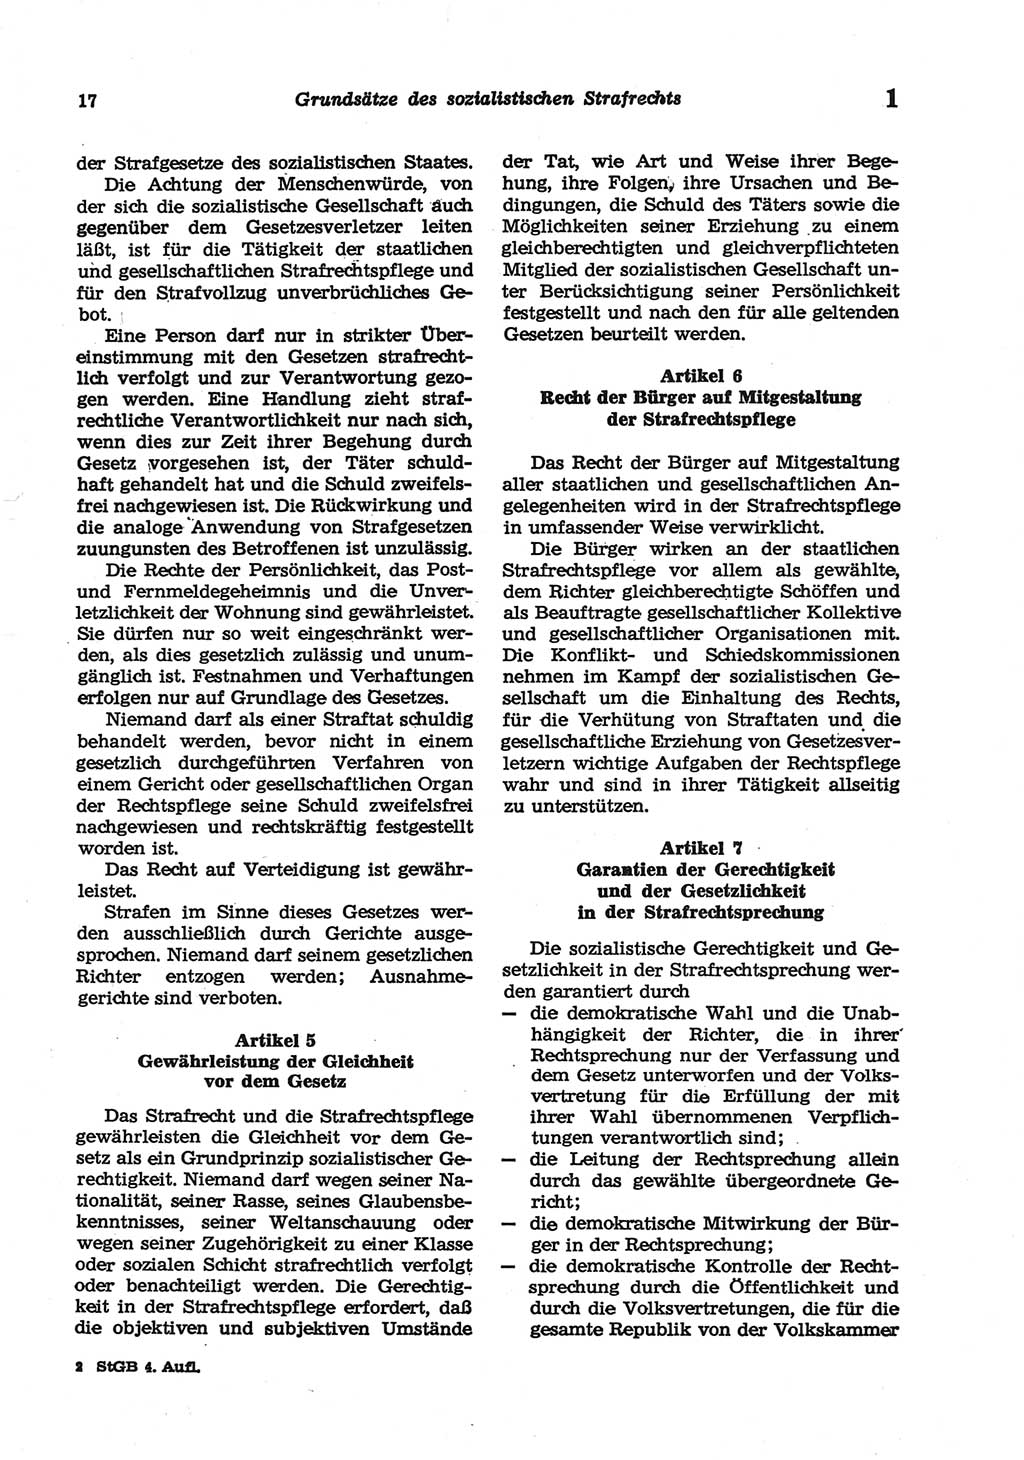 Strafgesetzbuch (StGB) der Deutschen Demokratischen Republik (DDR) und angrenzende Gesetze und Bestimmungen 1977, Seite 17 (StGB DDR Ges. Best. 1977, S. 17)